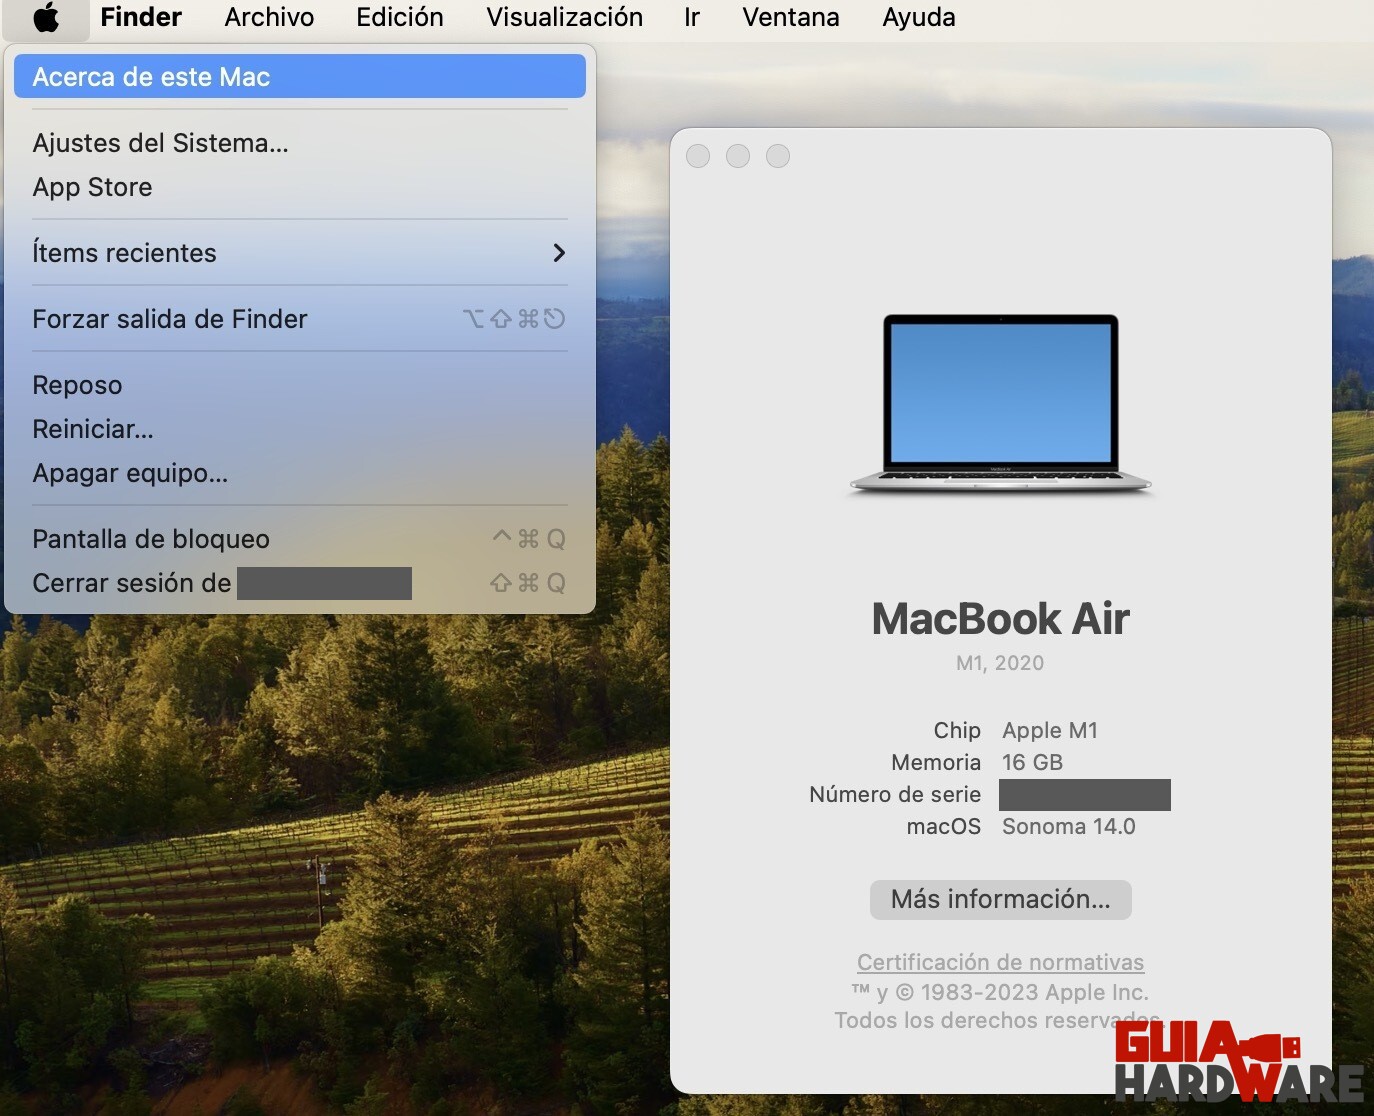 Acerca de este Mac en MacBook Air